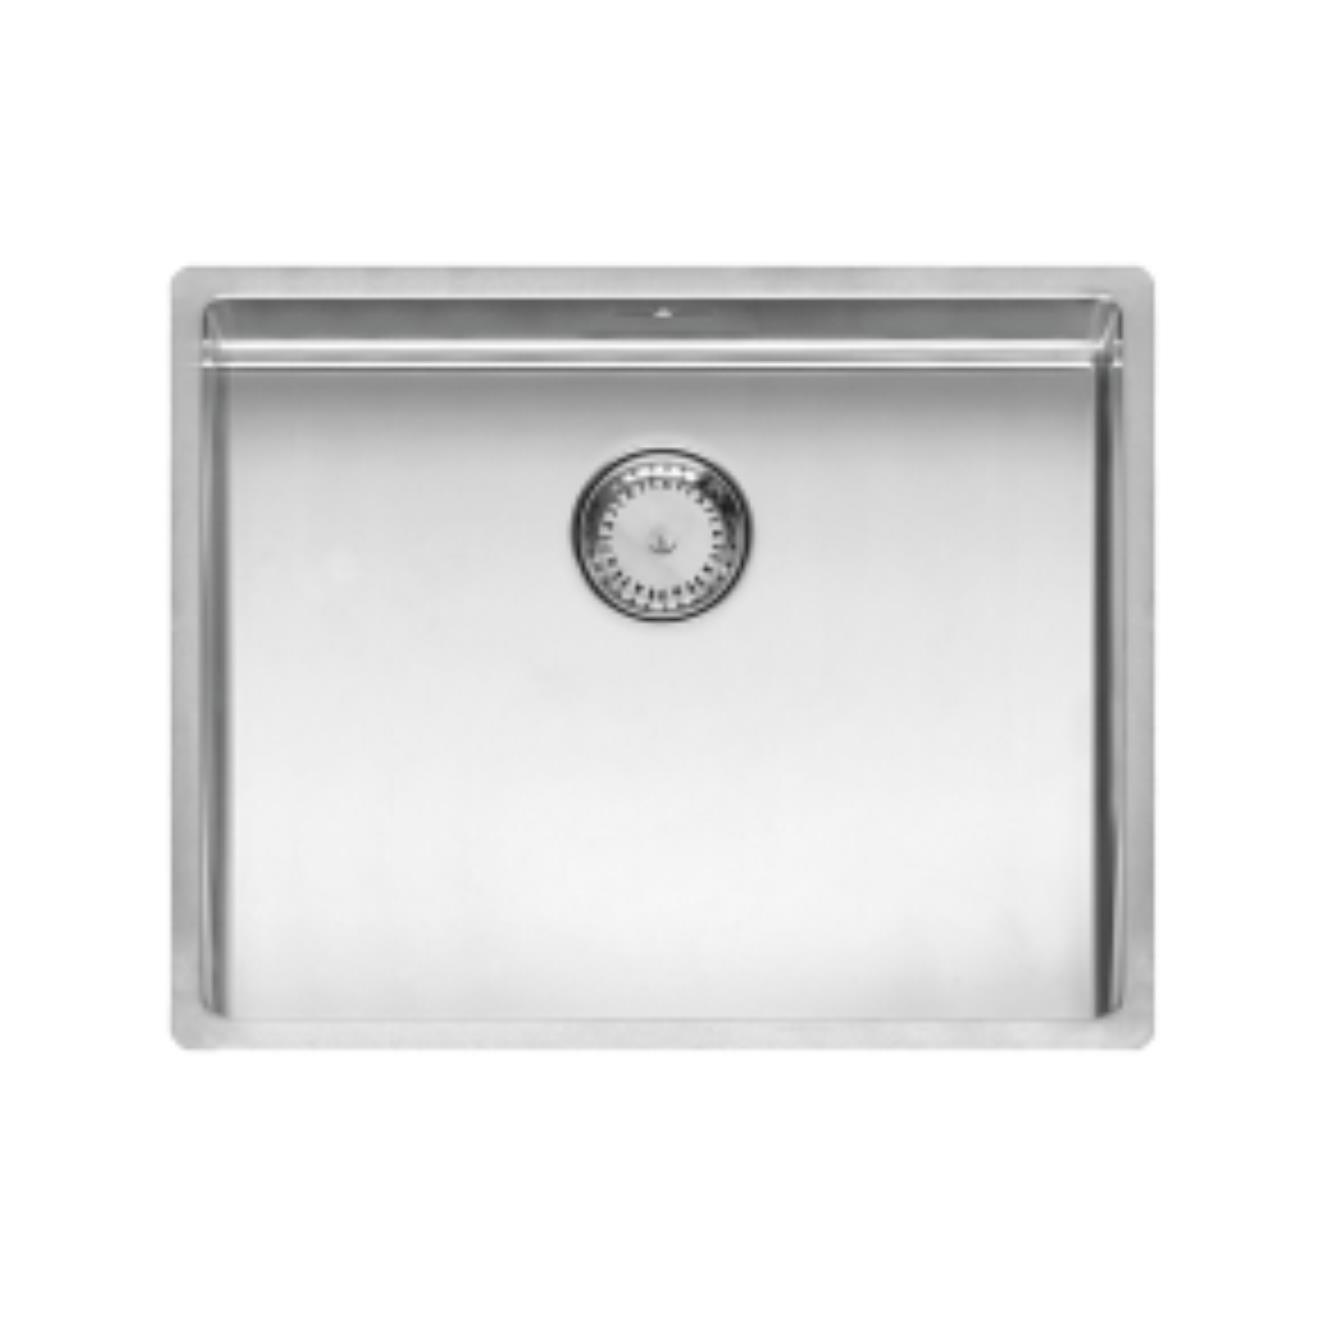 Reginox New York Stainless Steel Kitchen Sink Chrome 540 x 440mm